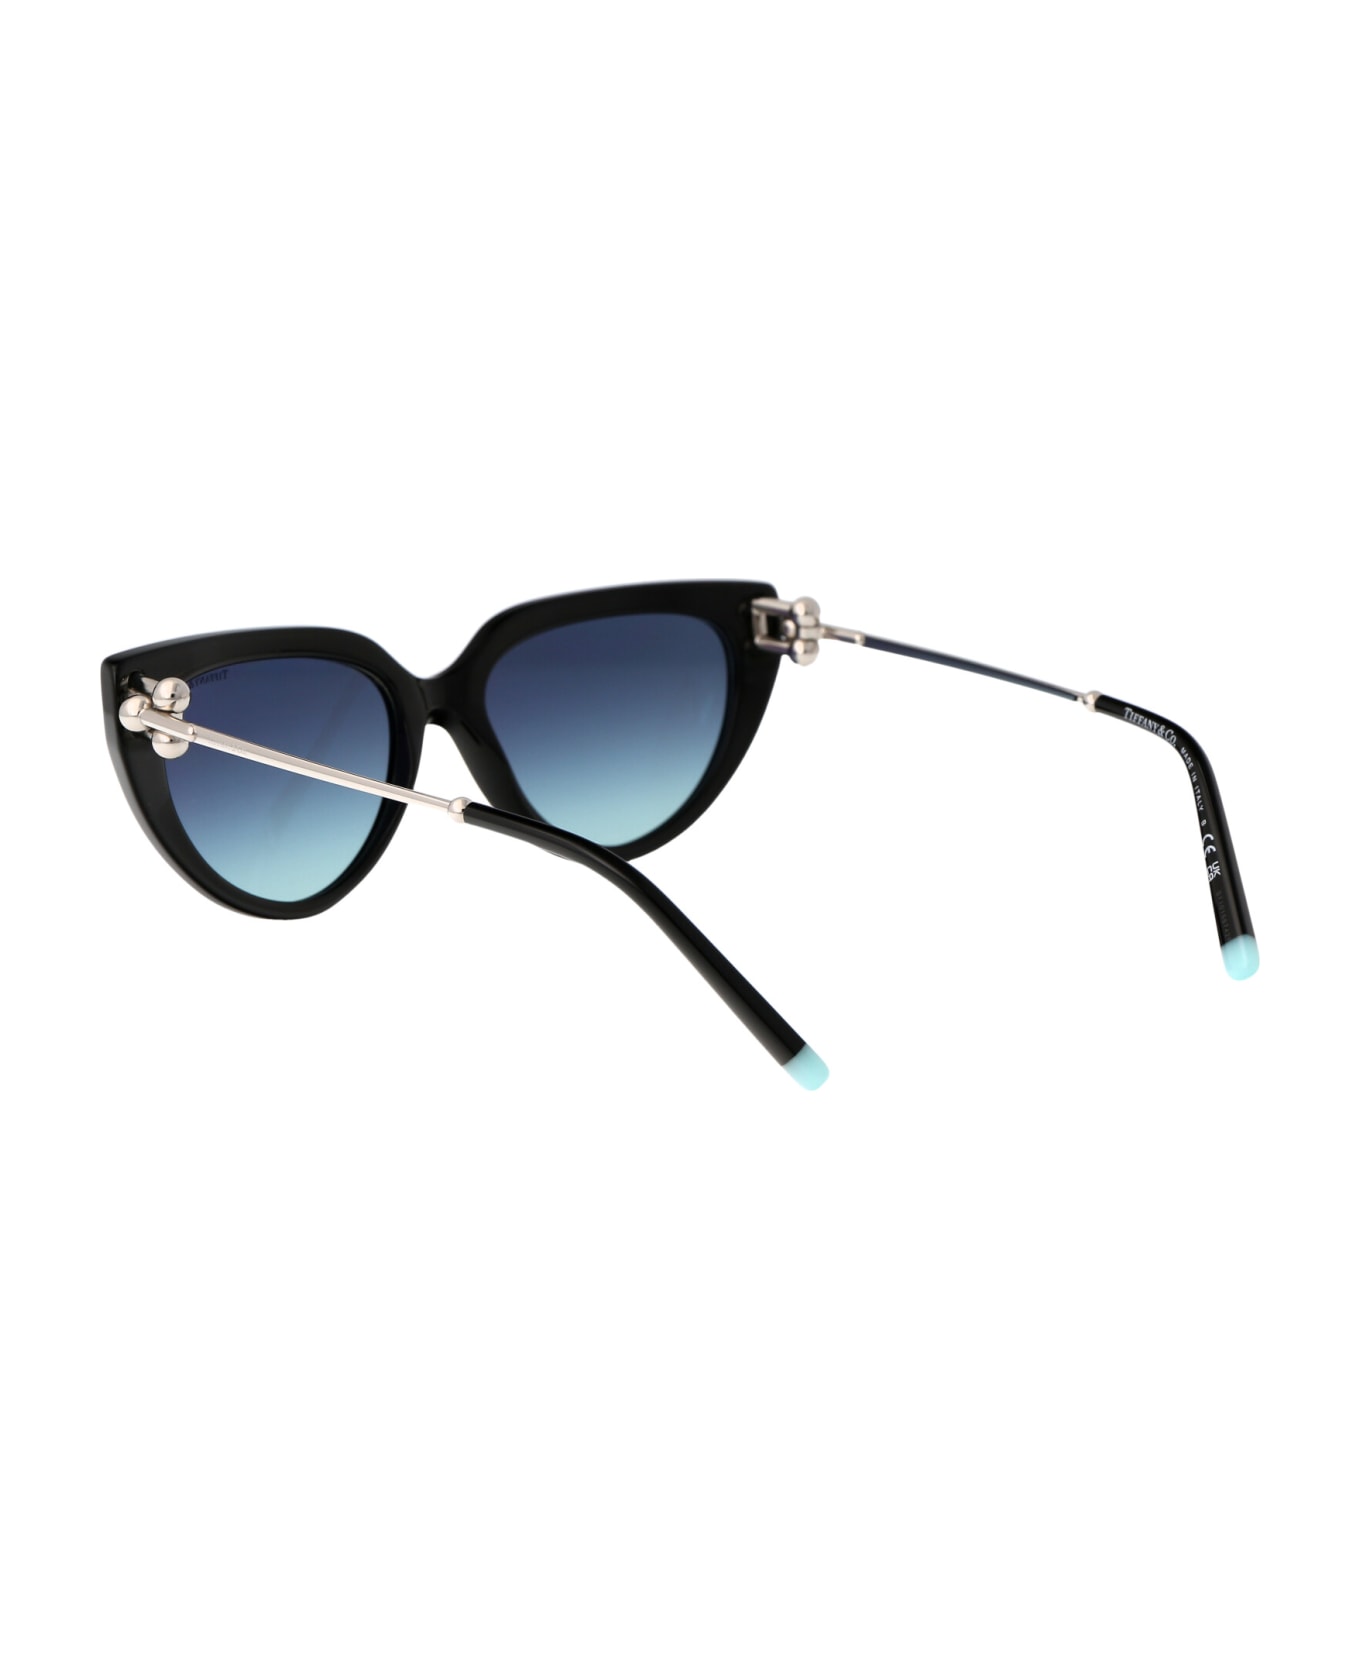 Tiffany & Co. 0tf4195 Sunglasses - 80019S Black サングラス